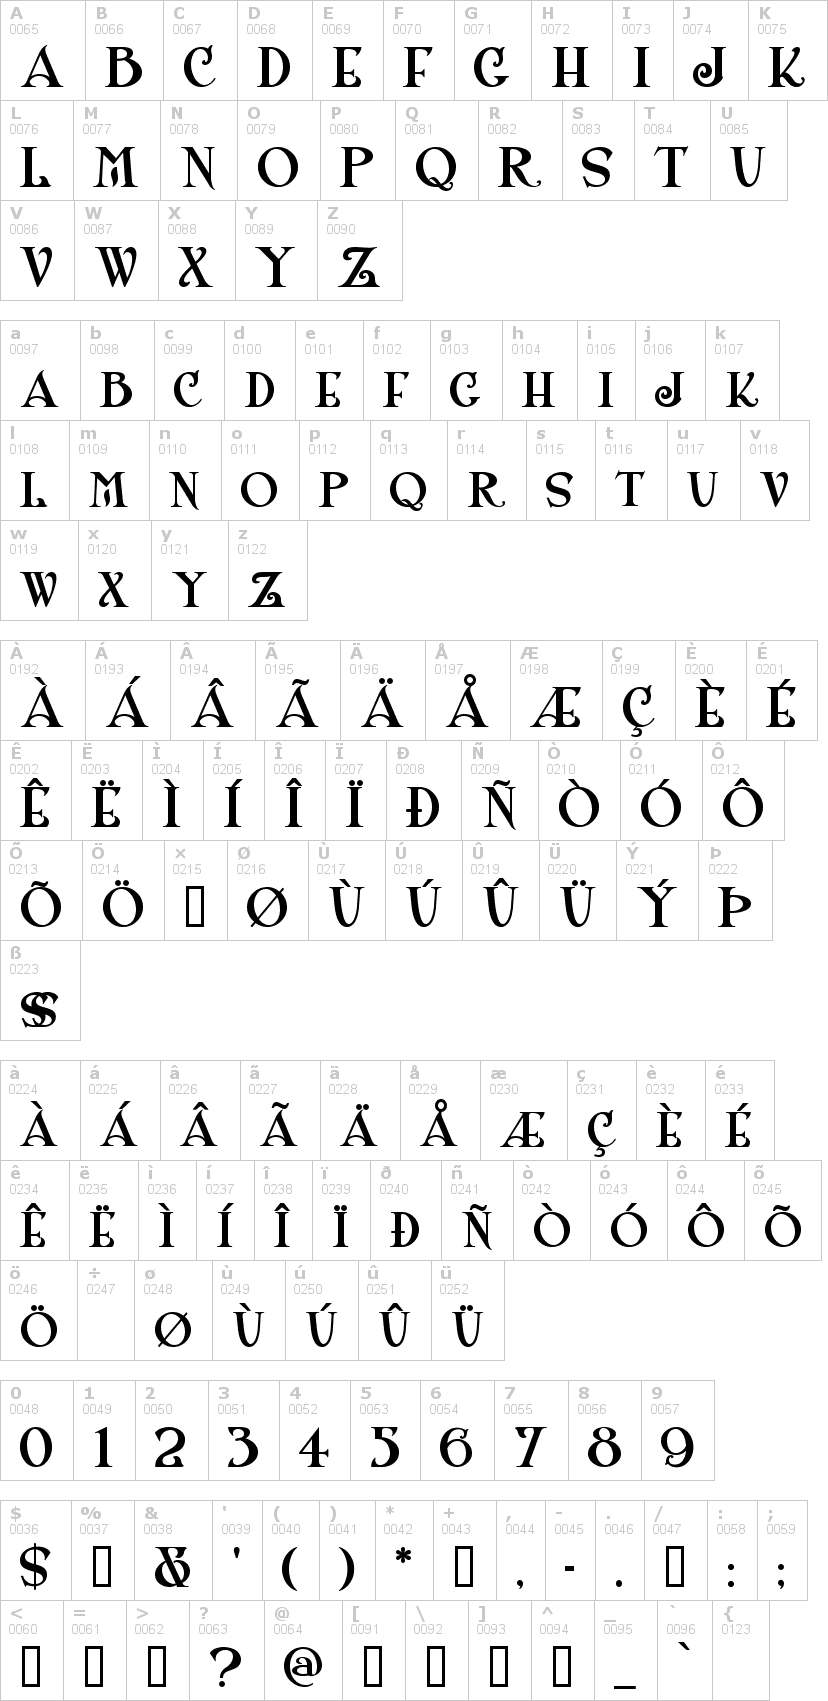 Lettere dell'alfabeto del font shangri con le quali è possibile realizzare adesivi prespaziati